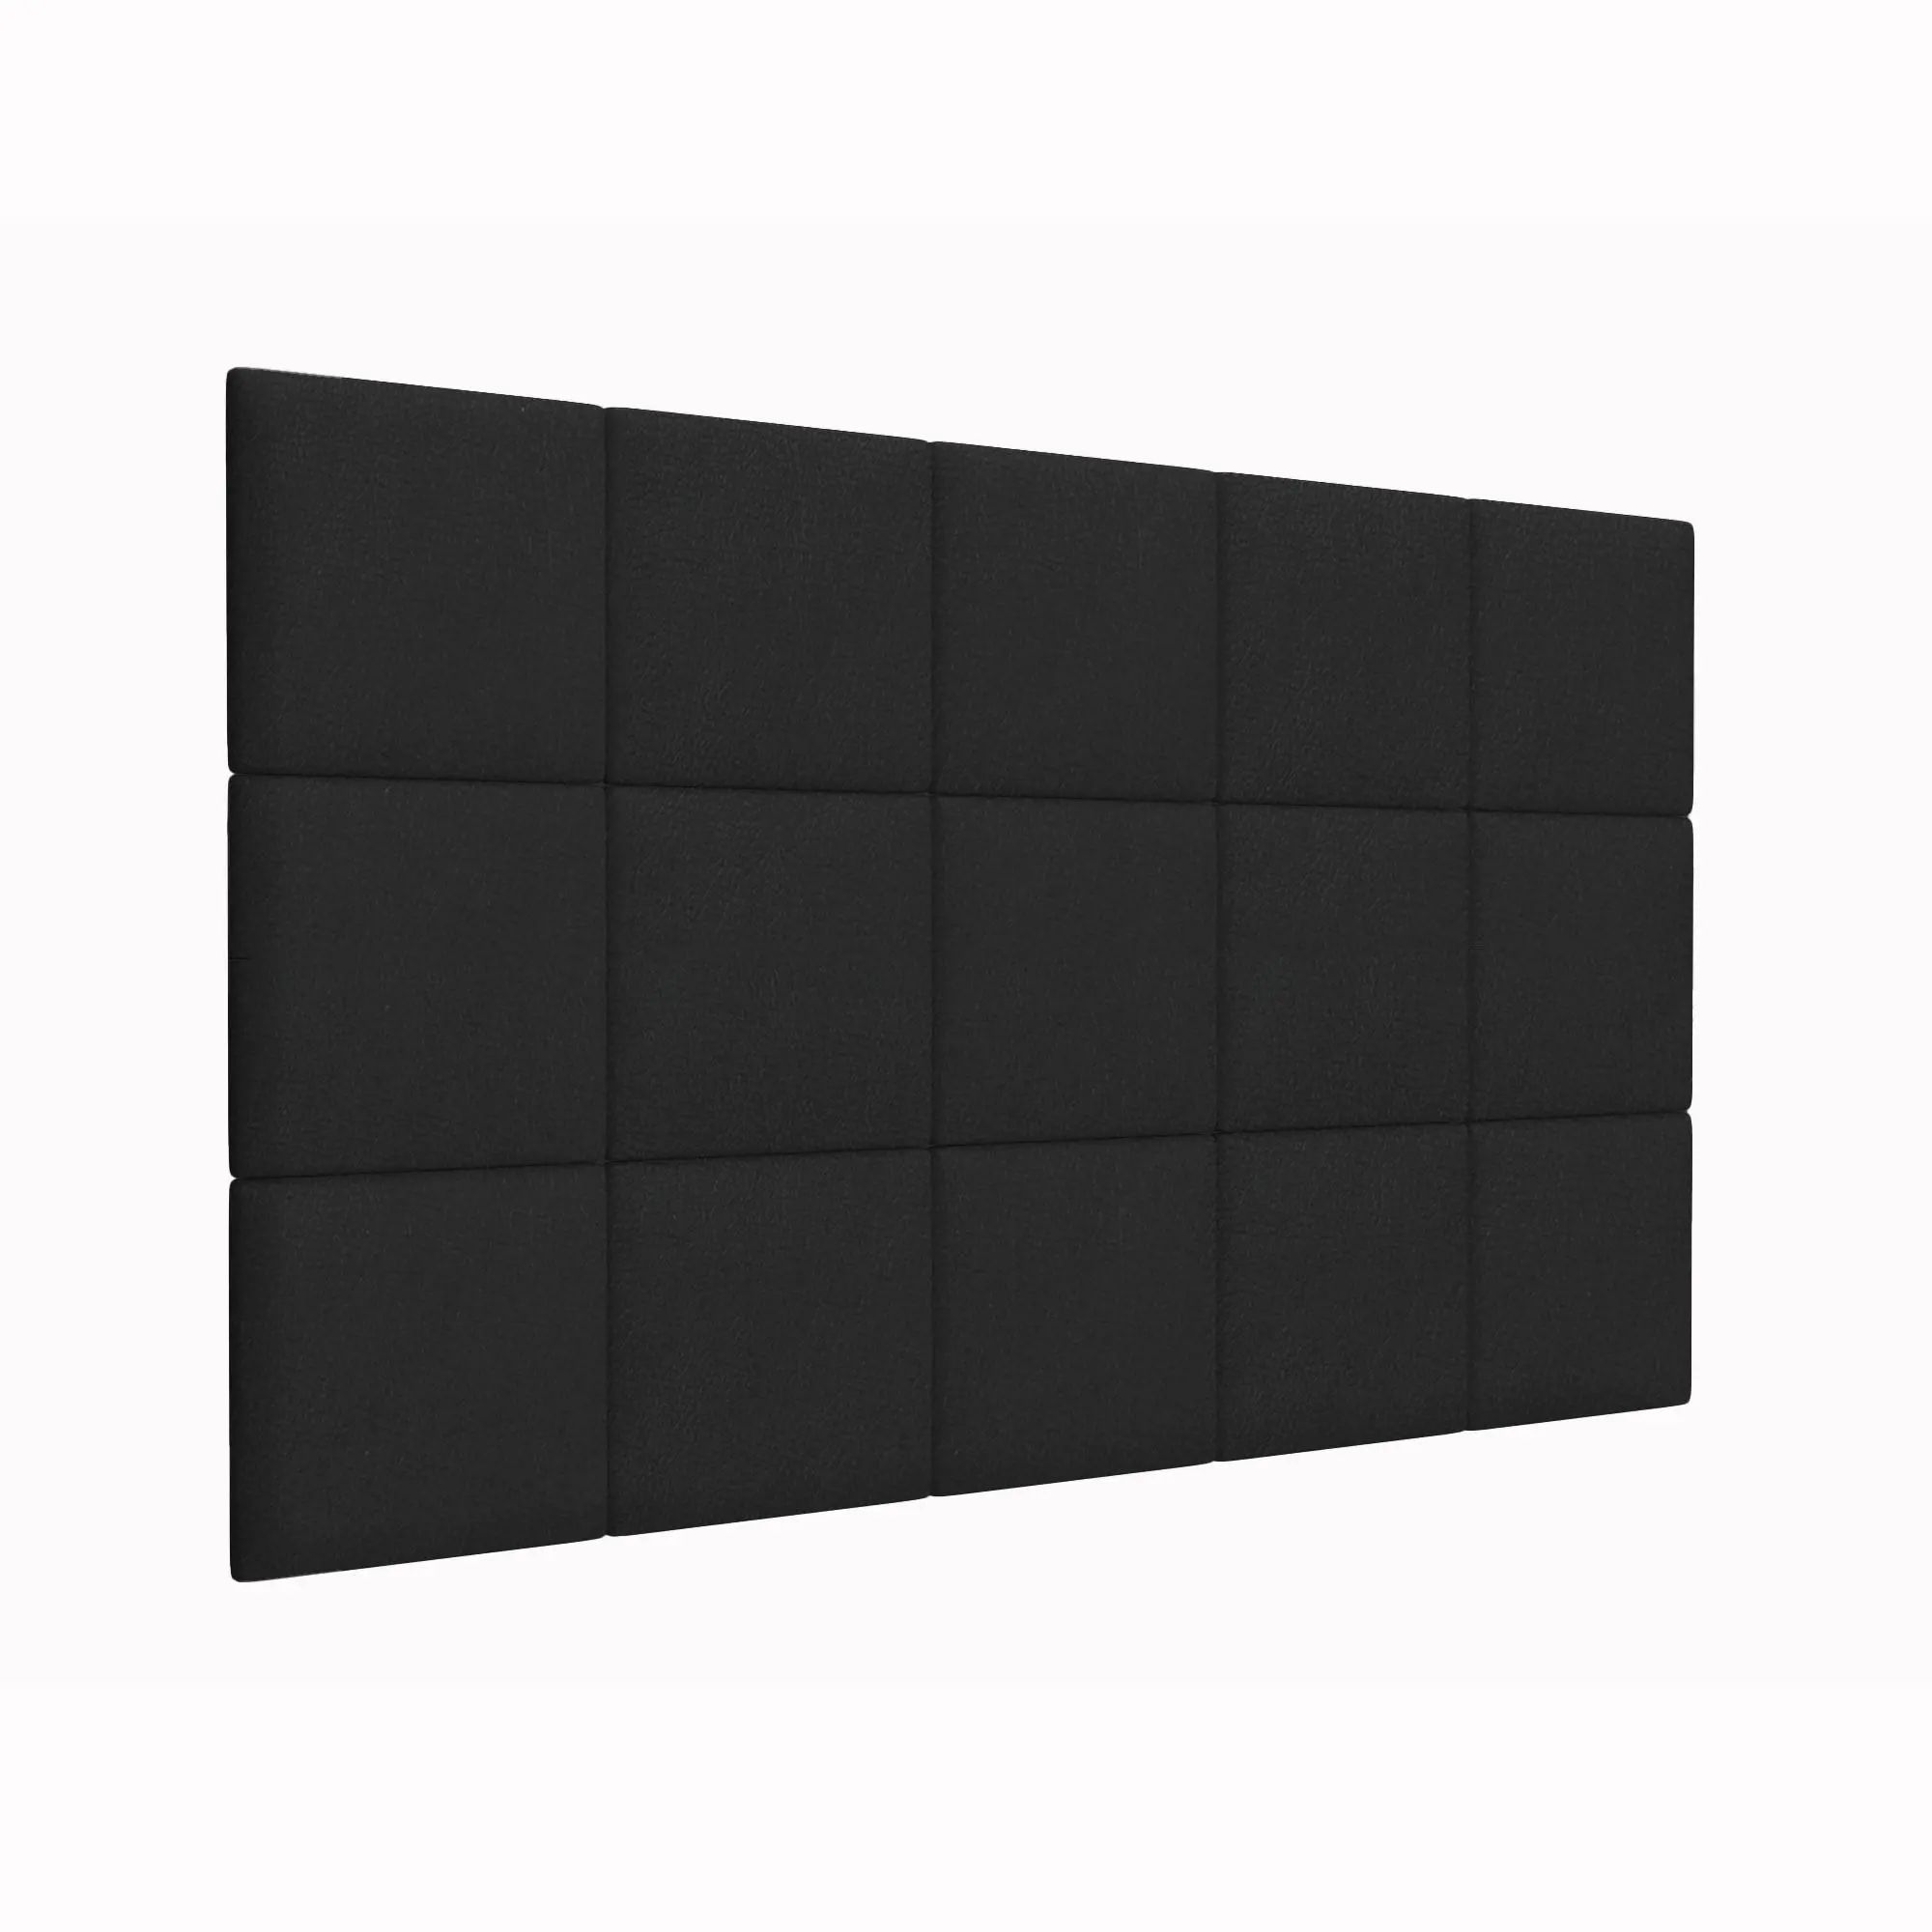 Стеновая панель Eco Leather Black 30х30 см 2 шт. декор ascot ceramiche glamourwall gmcx10 calacatta mix сд154рк 30х30 см